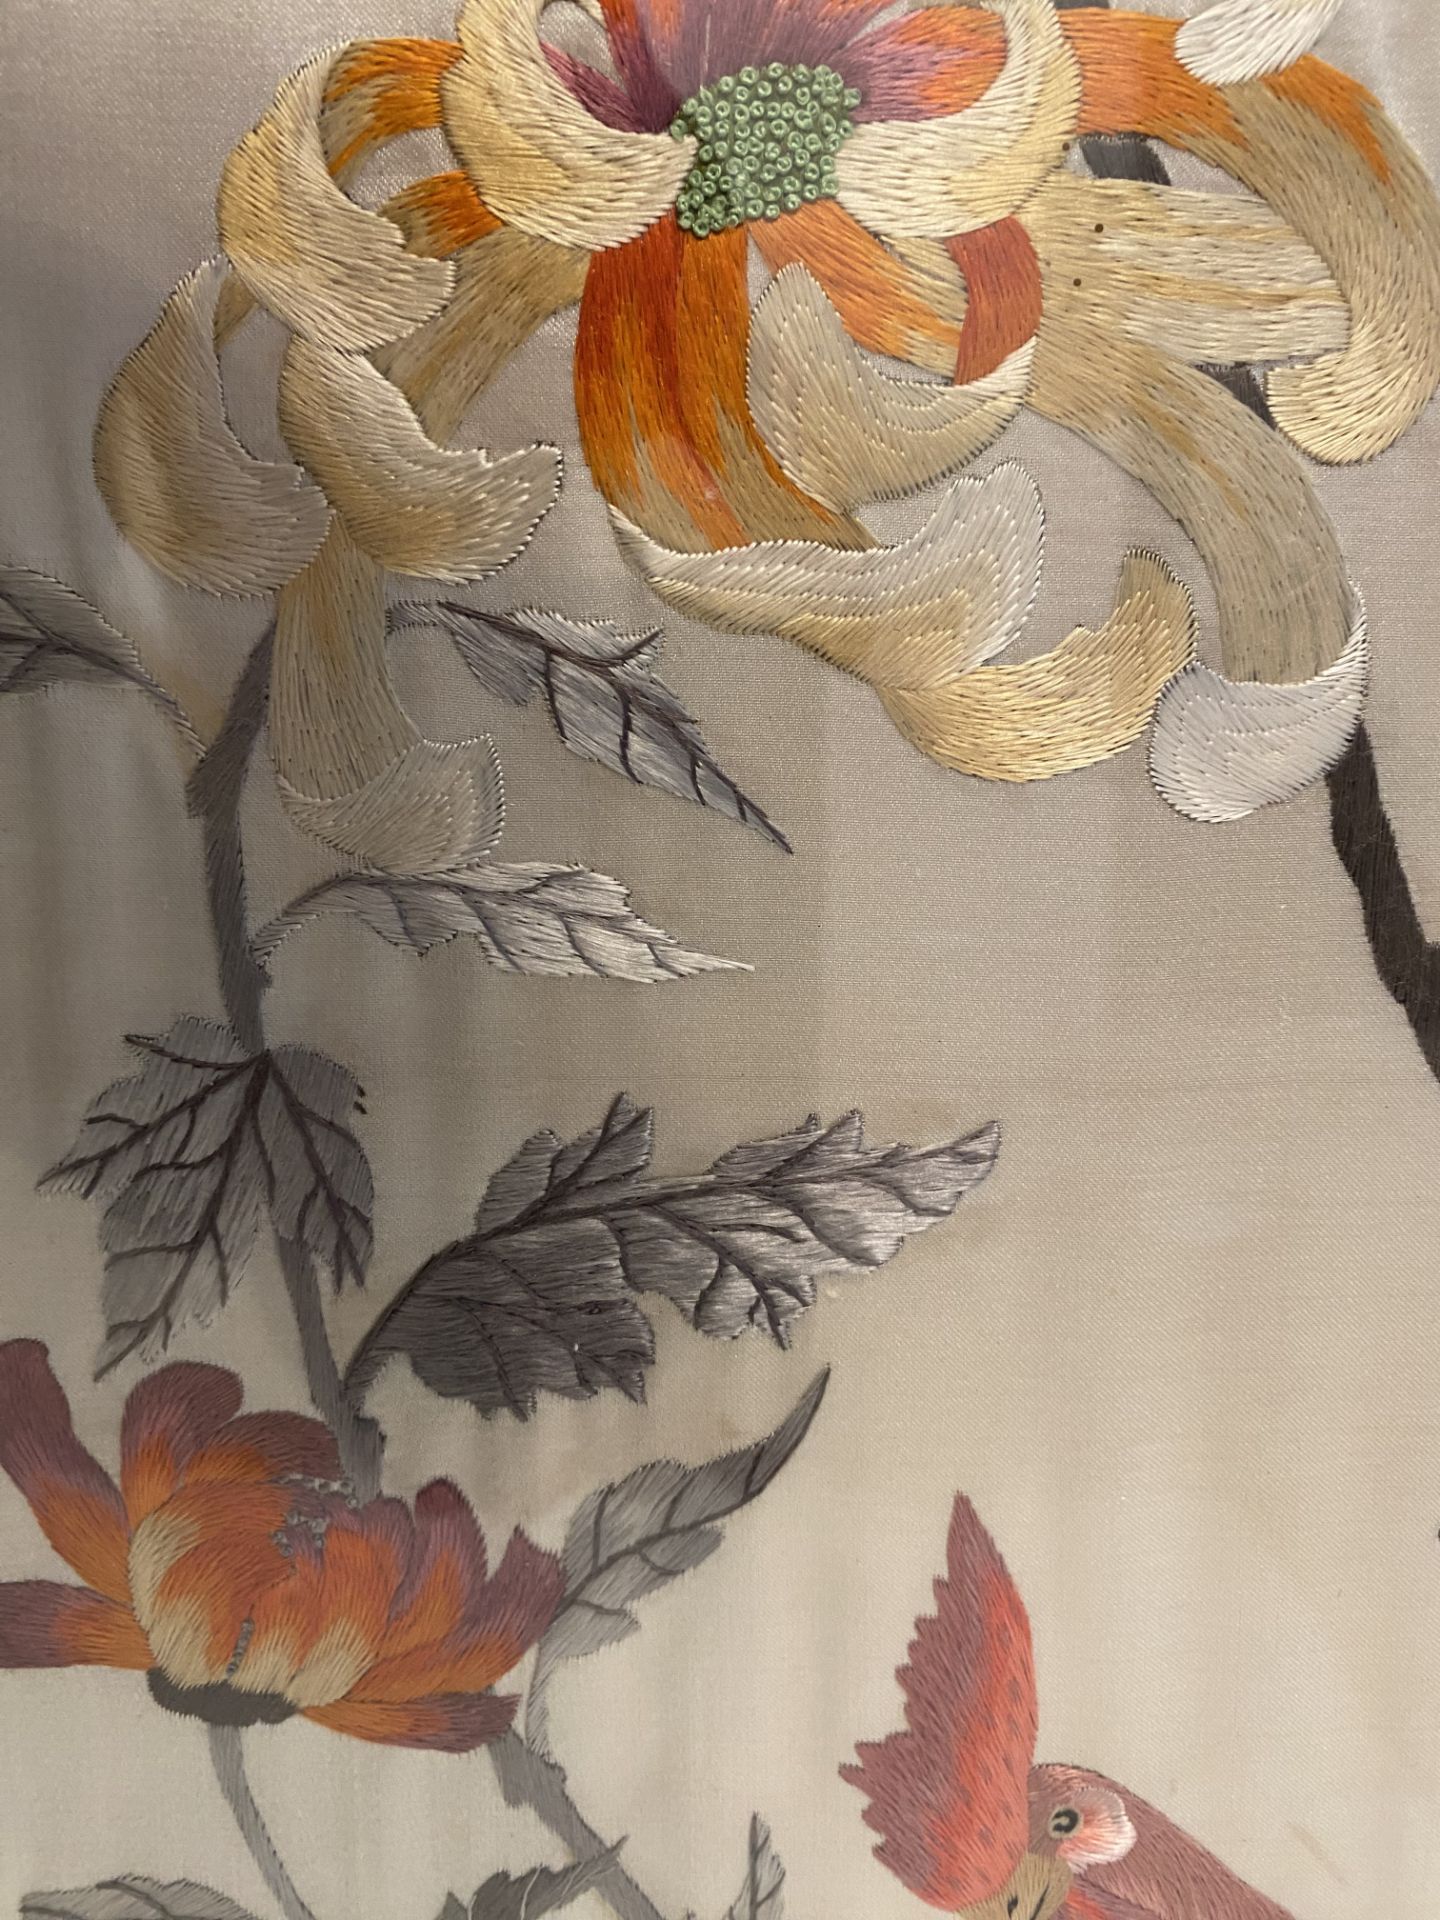 Lot of 2 vintage Eastern Tapestries framed - Image 5 of 5